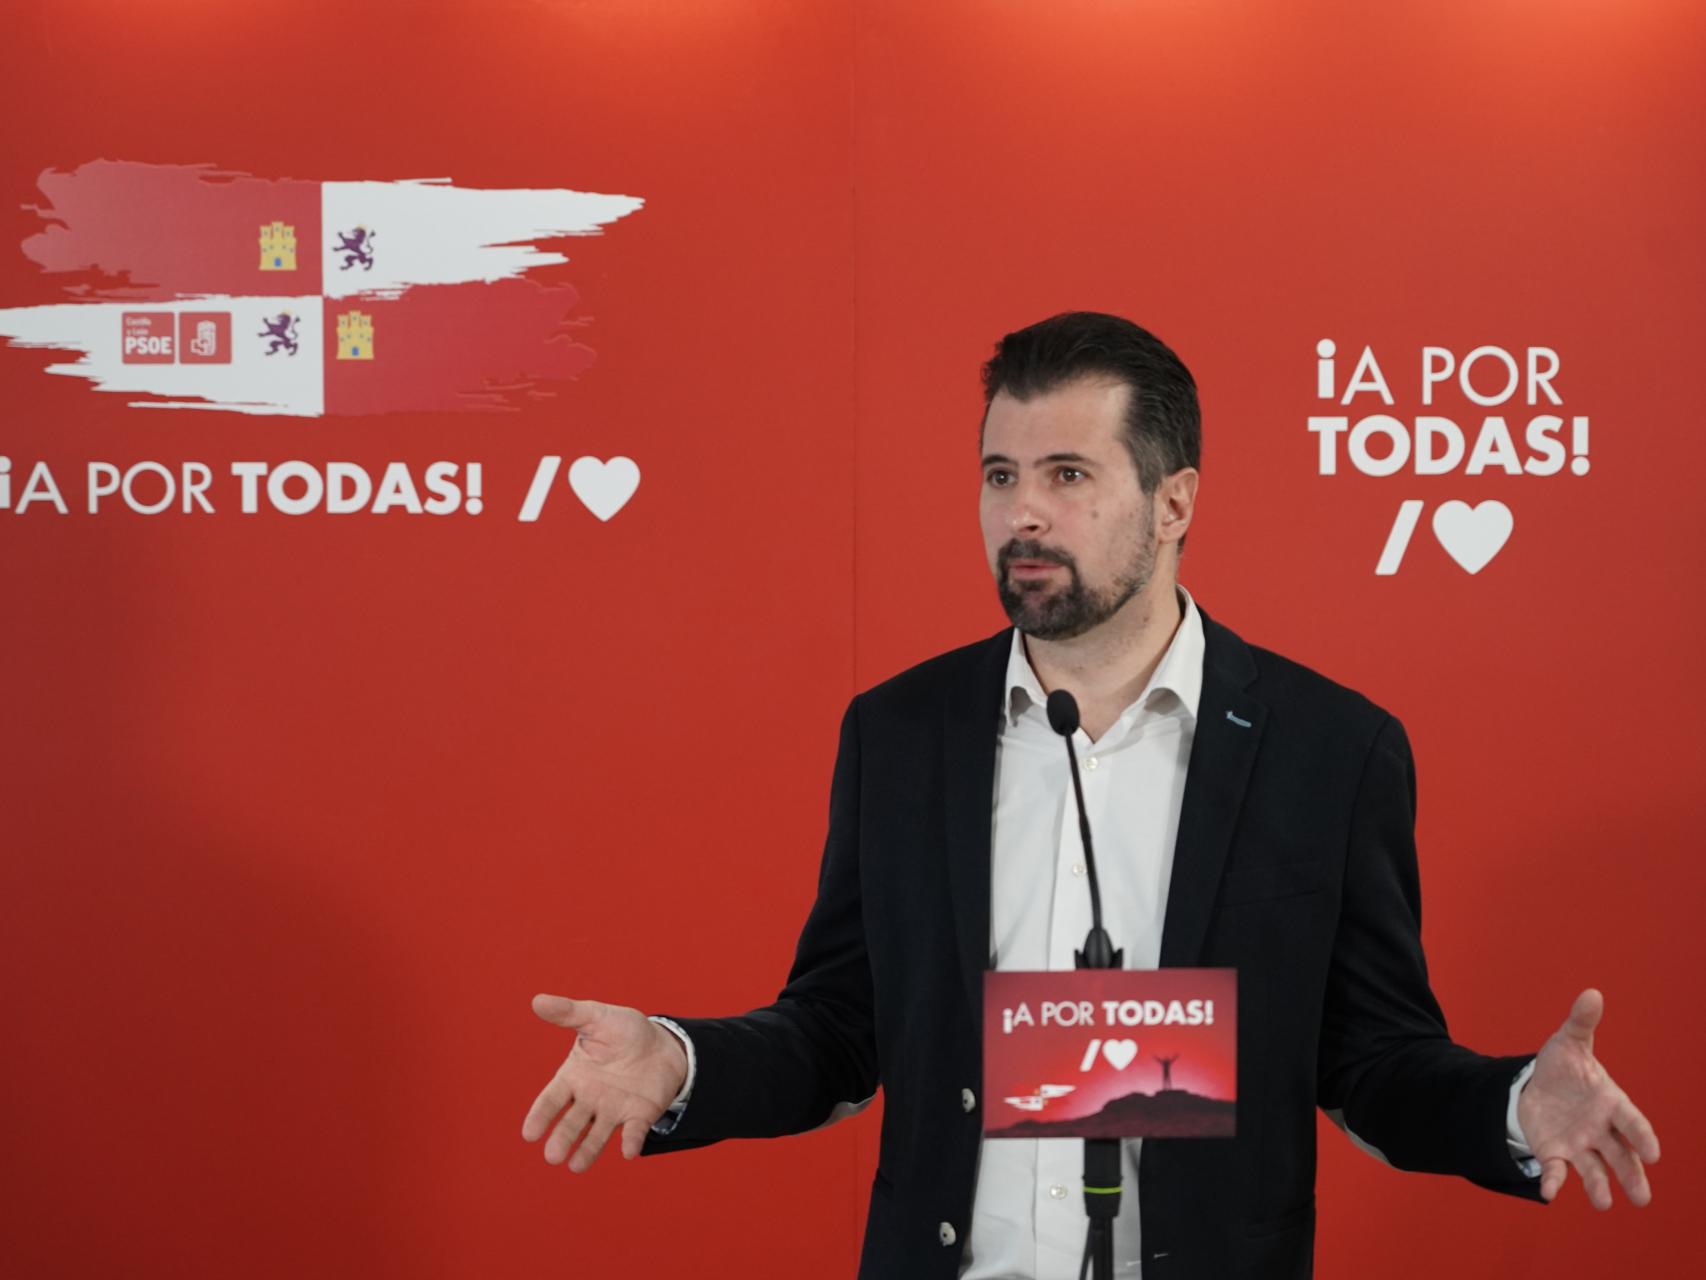 El dirigente socialista, Luis Tudanca, interviene en un encuentro con la prensa en Valladolid, este miércoles.